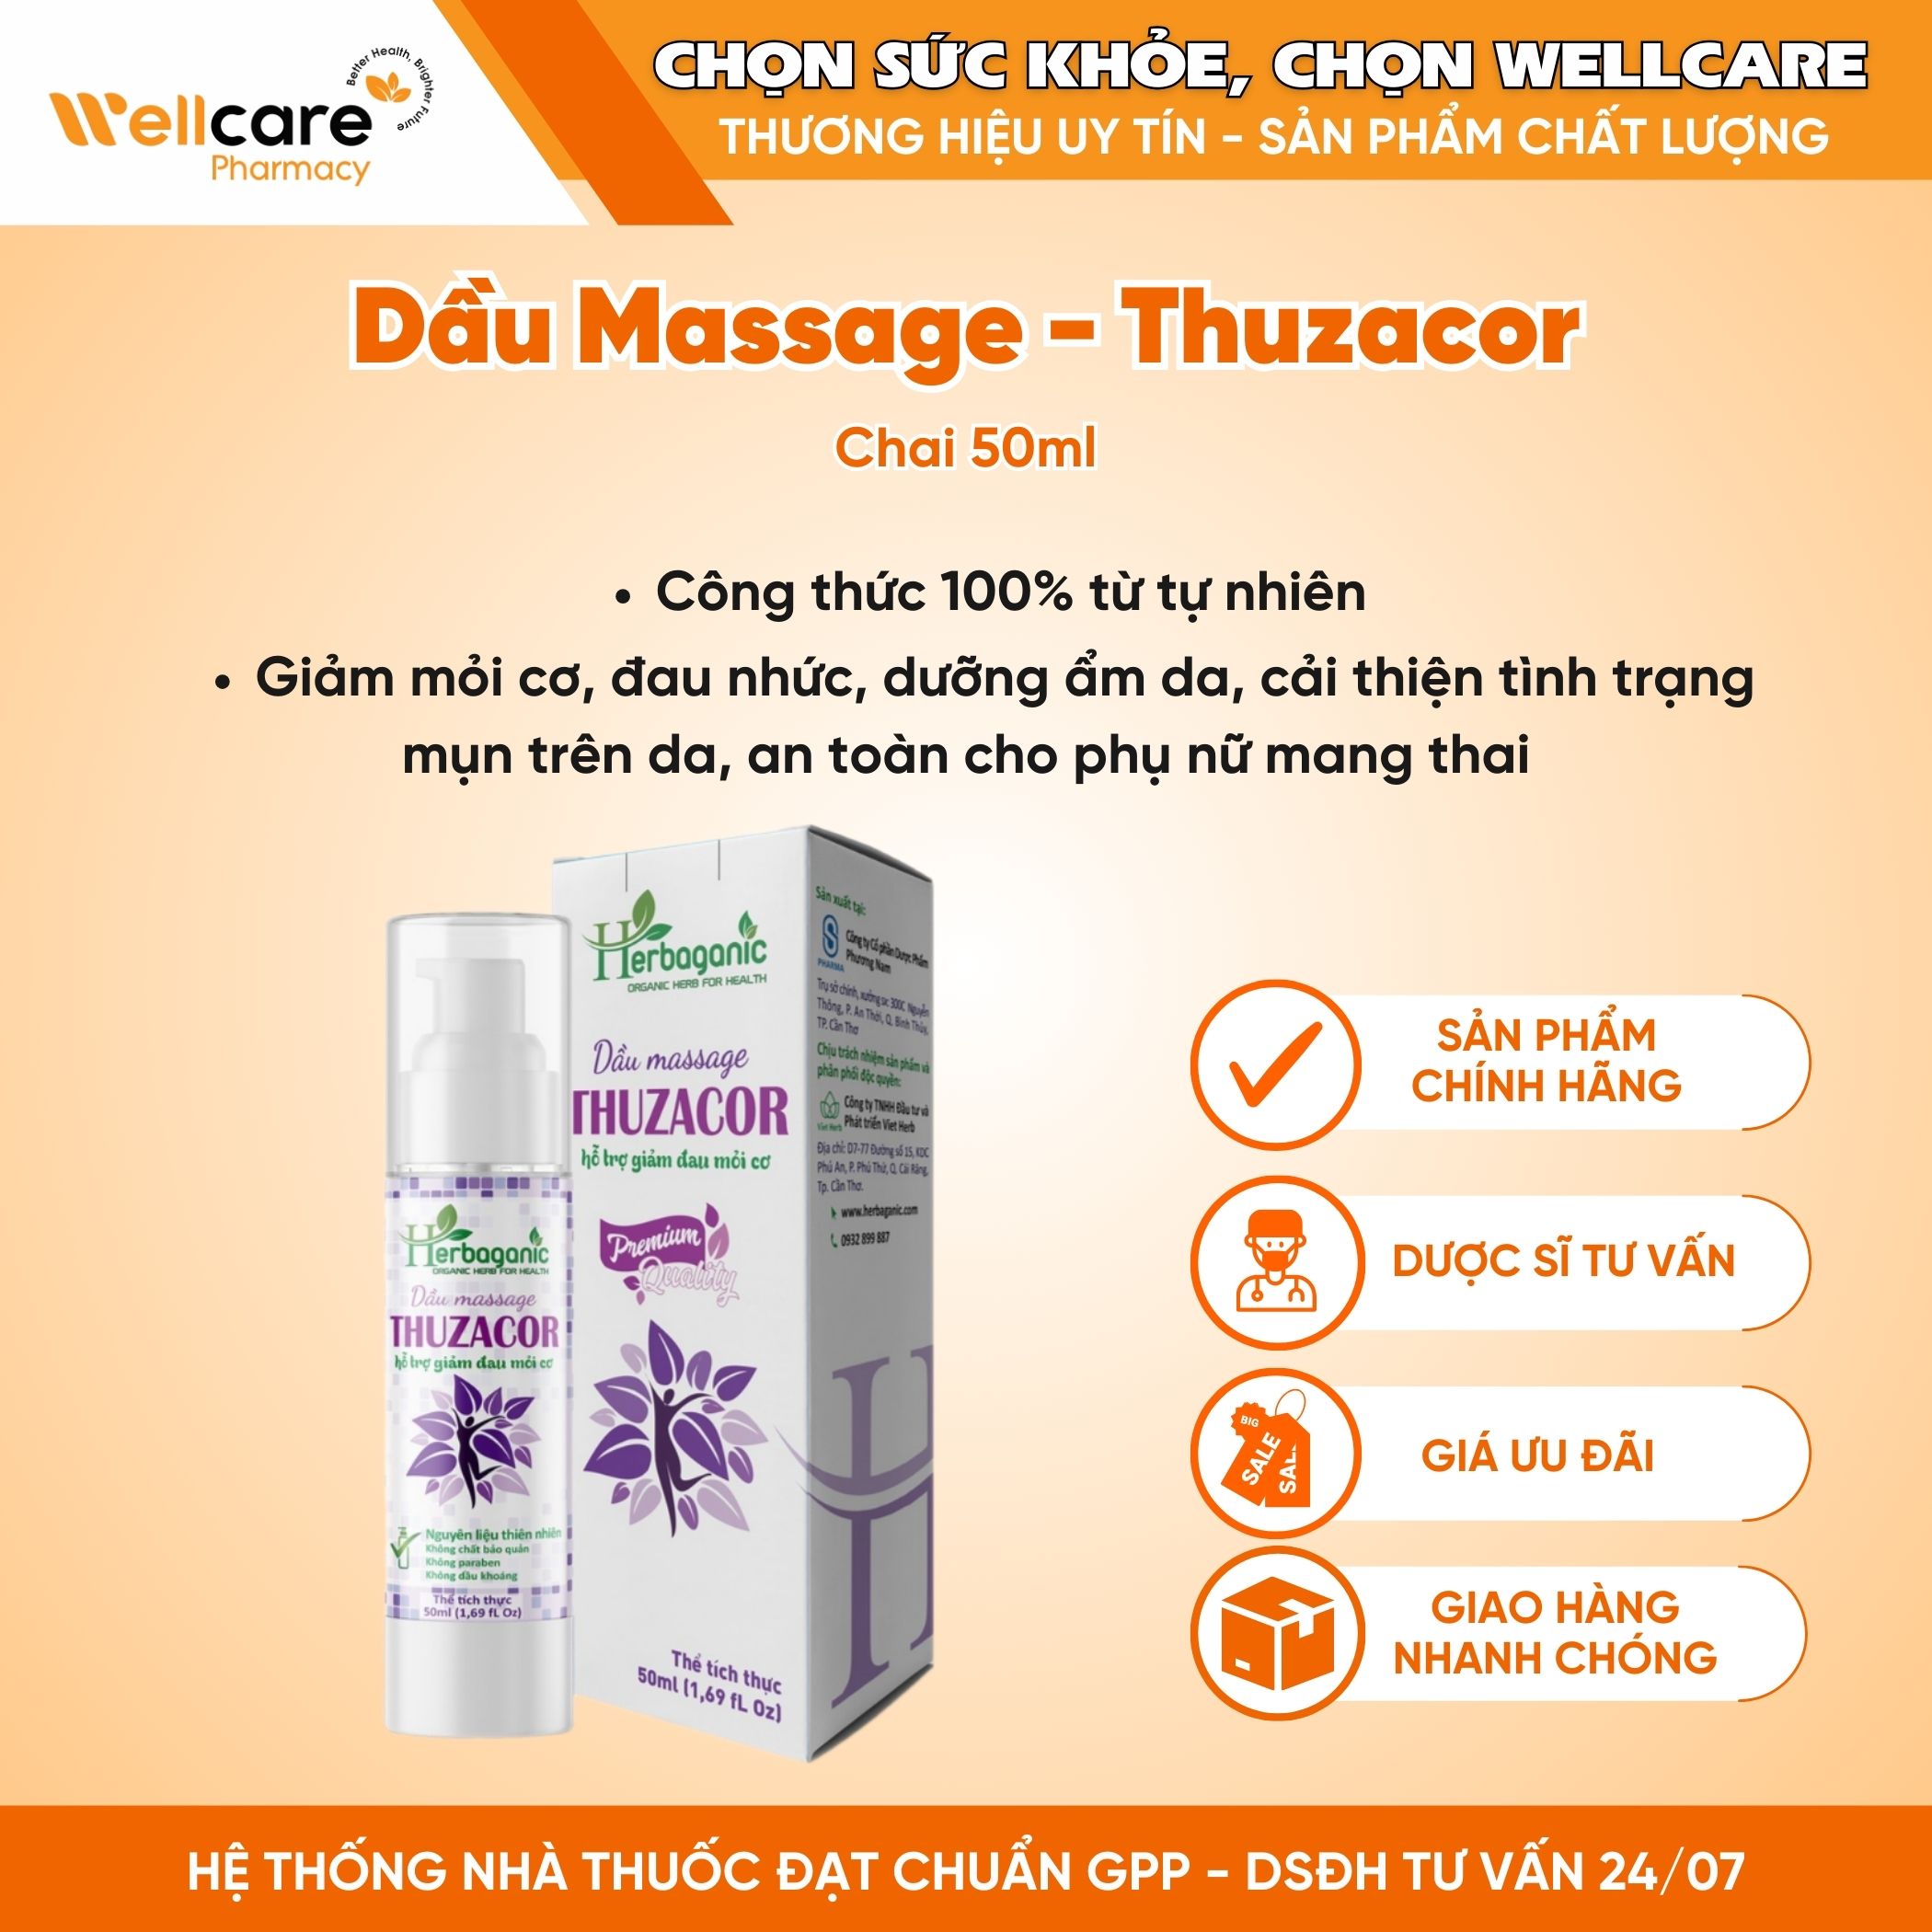 Dầu massage Thuzacor – Hỗ trợ giảm đau mỏi cơ (Chai 50ml)